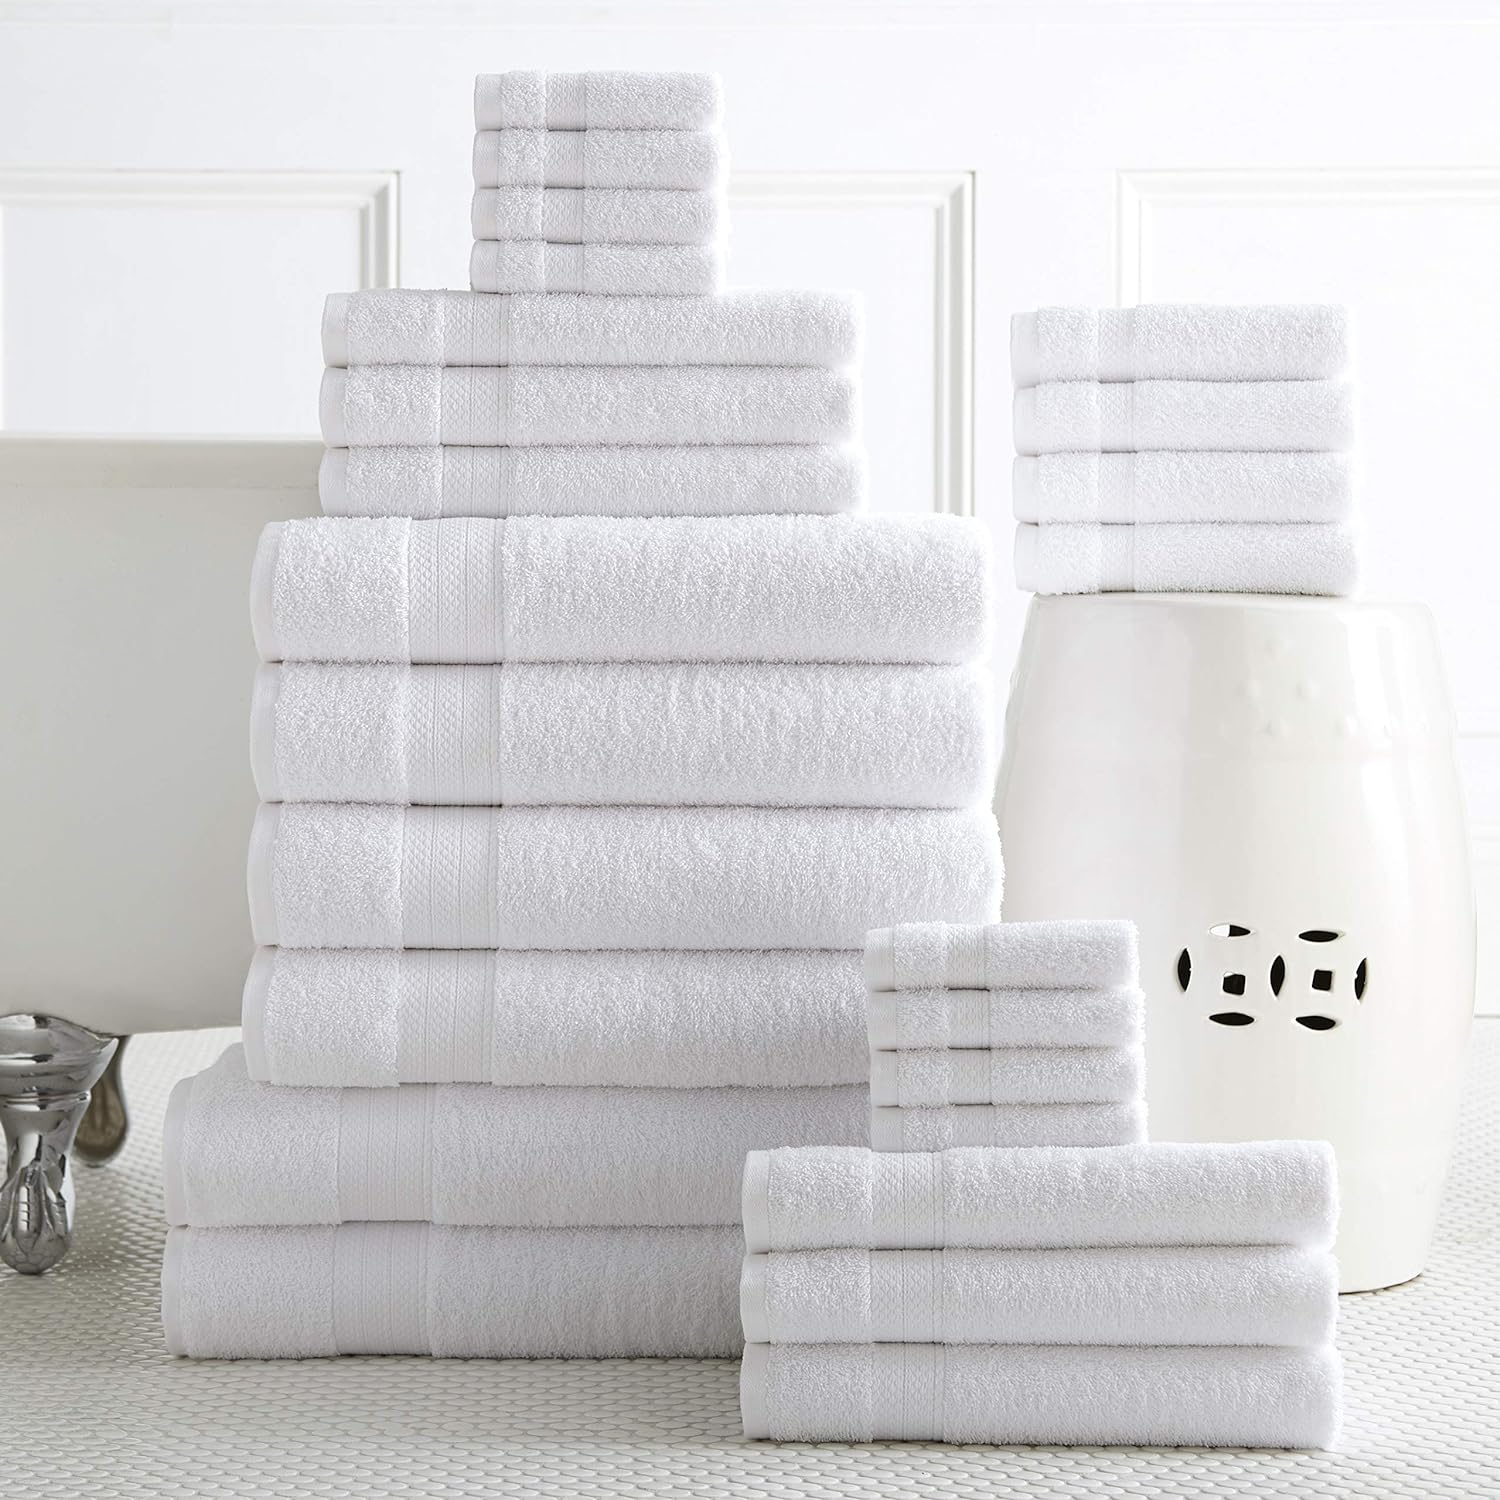 Juego de 24 toallas de baño blancas para baño, 2 toallas de baño de gran